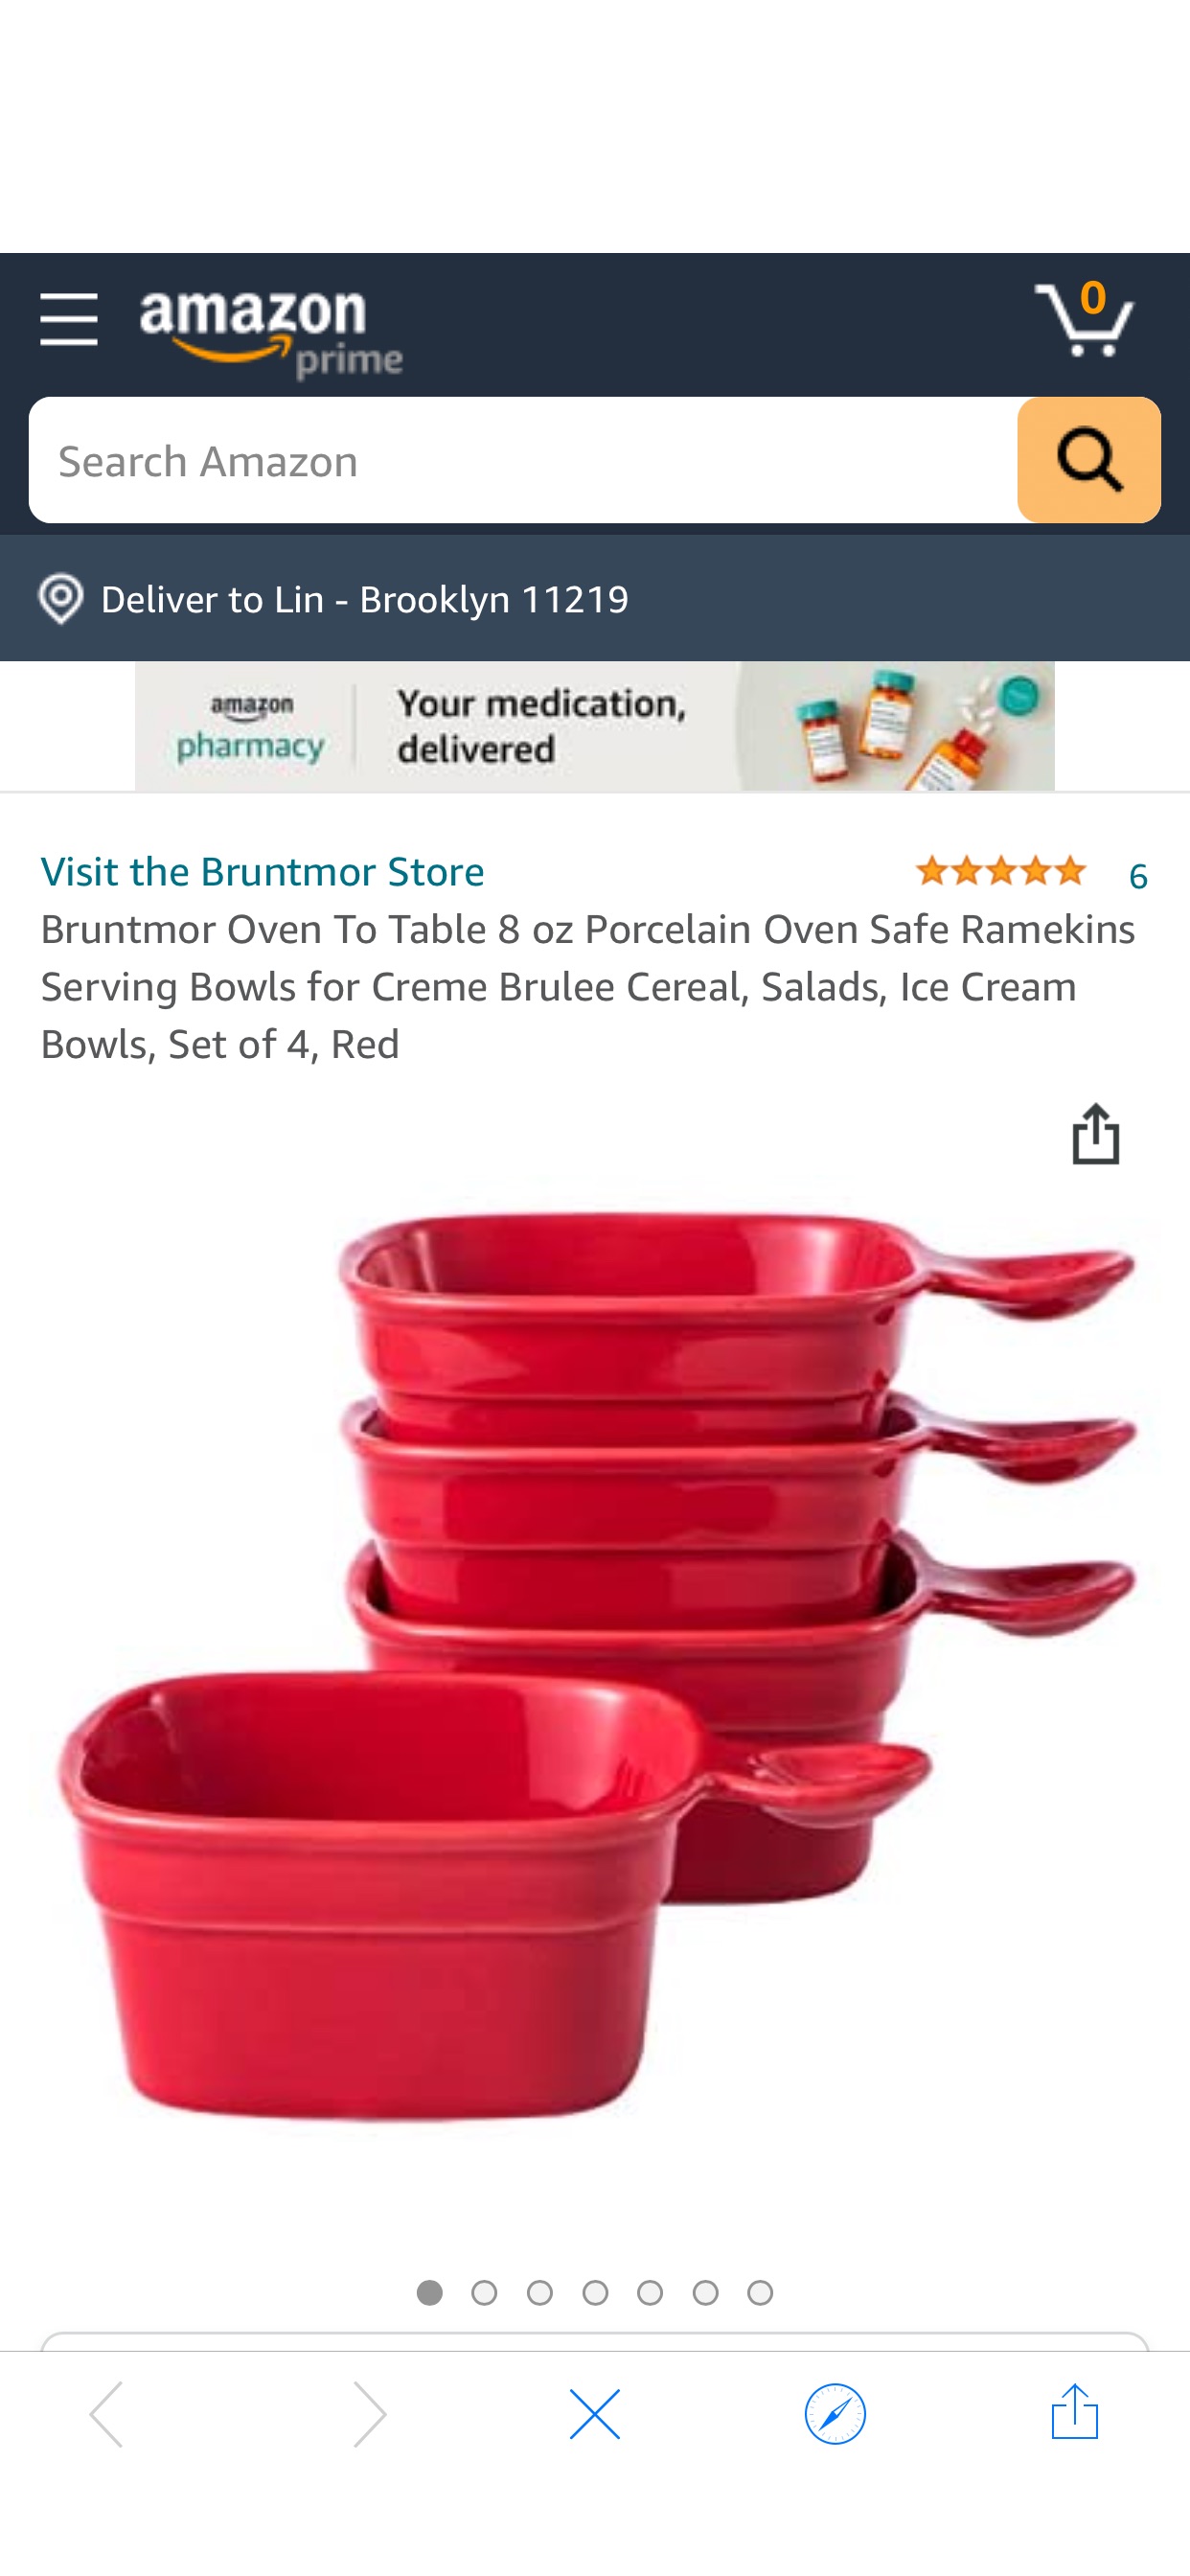 Amazon.com | Bruntmor Oven To Table 8 oz Porcelain Oven Safe Ramekins Serving Bowls for Creme Brulee Cereal, Salads, Ice Cream Bowls, Set of 4, Red: Serving Bowls 洋气好看